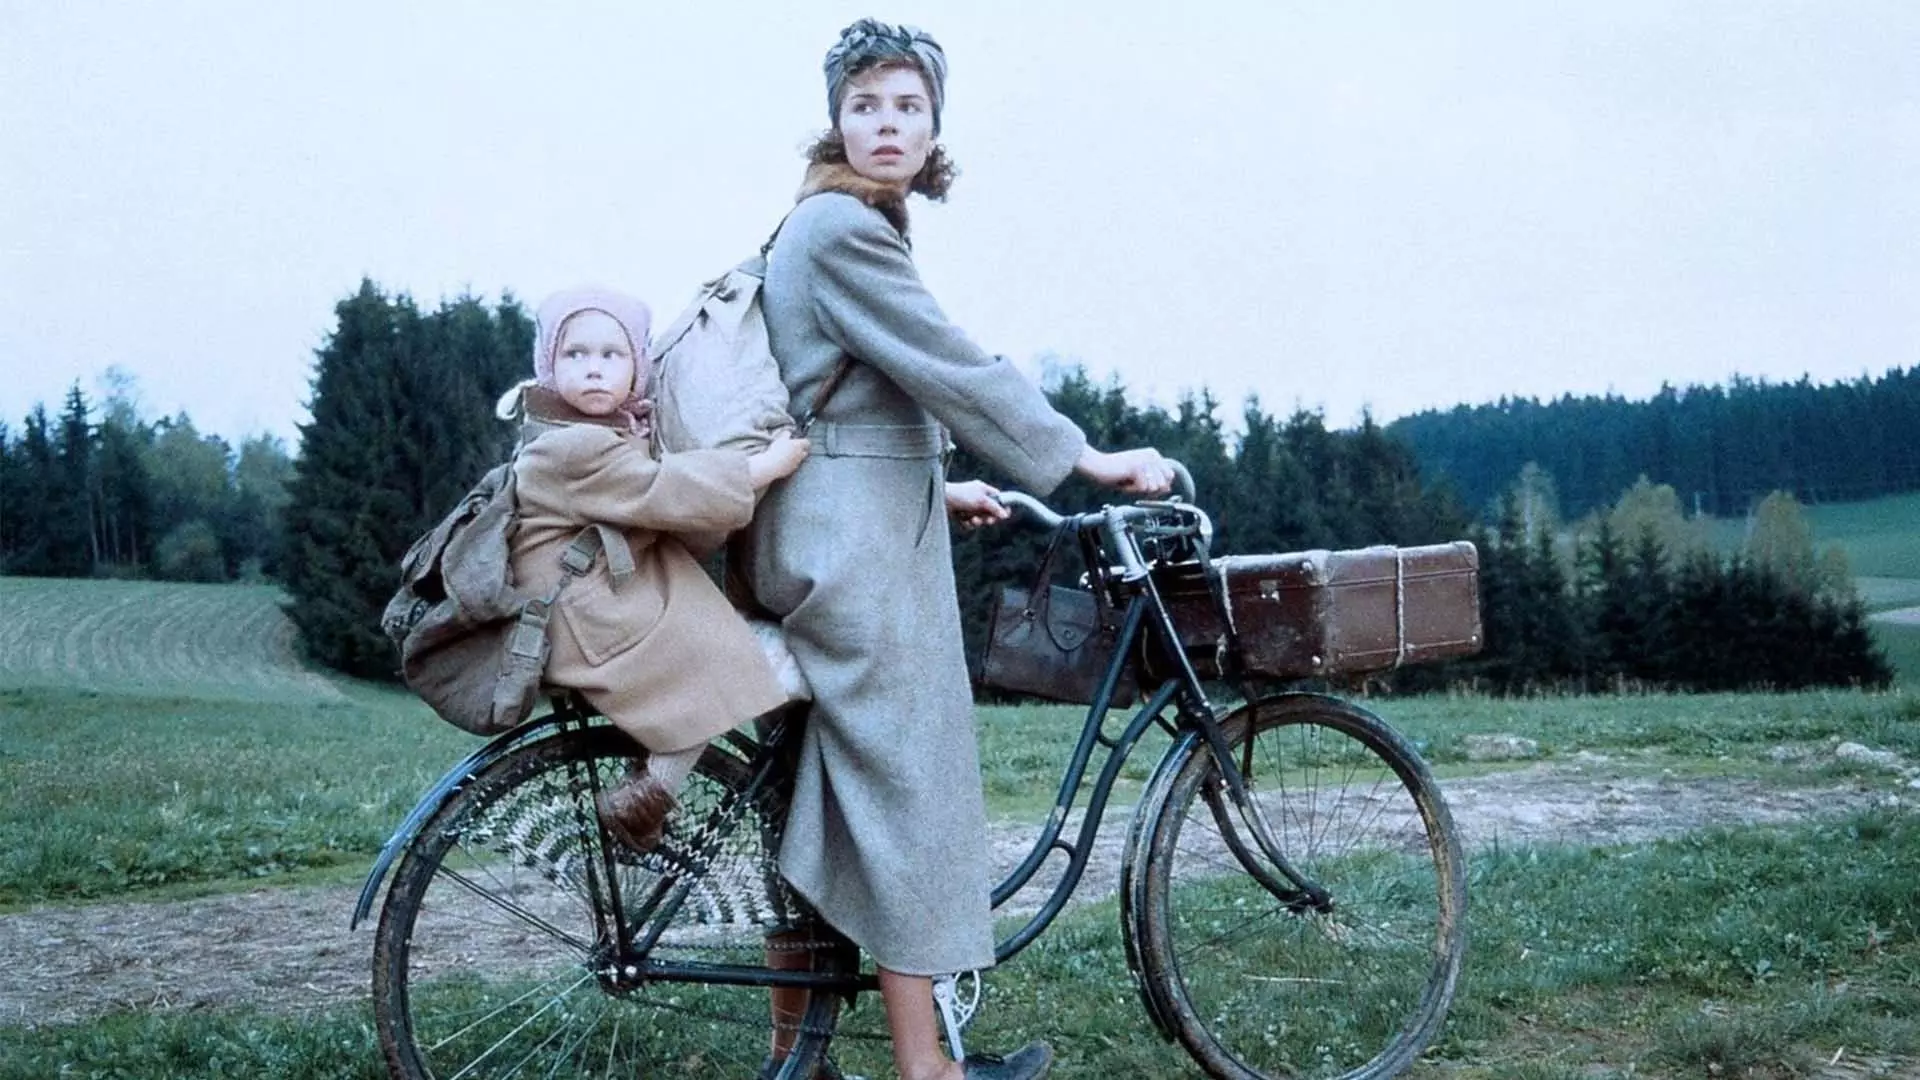 دانا واورووا به همراه یک کودک در فیلم stalingrad روی دوچرخه نشسته است